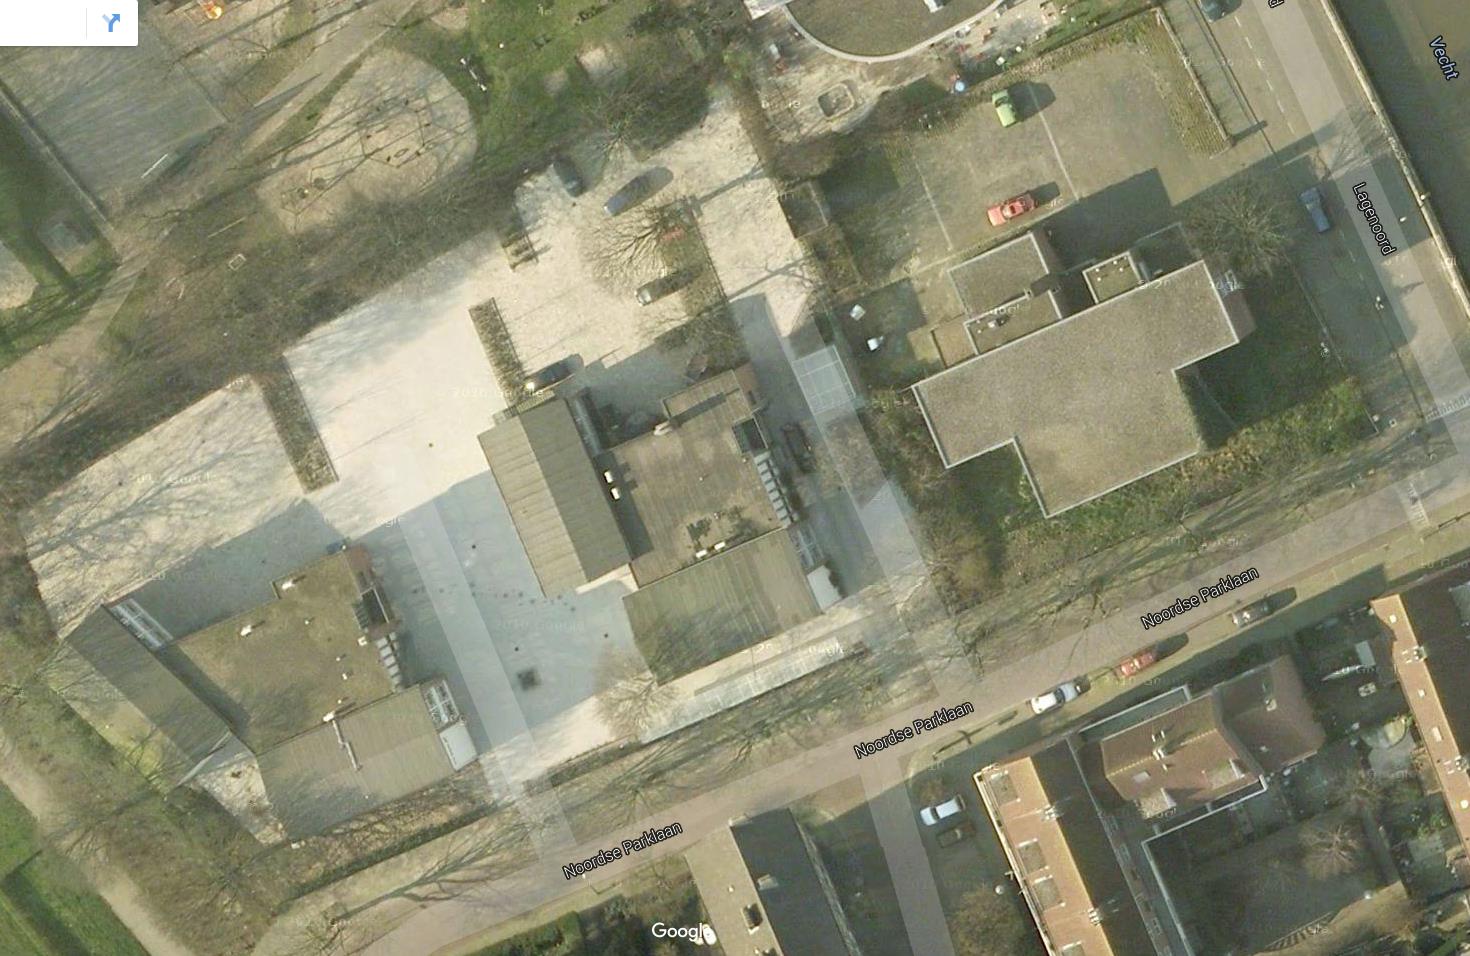 Tijdelijke huisvesting Utrecht Buitenterrein: Pand 1, 2 & 3 Opslag / containers Beveiligingscamera s Plein Brievenbus